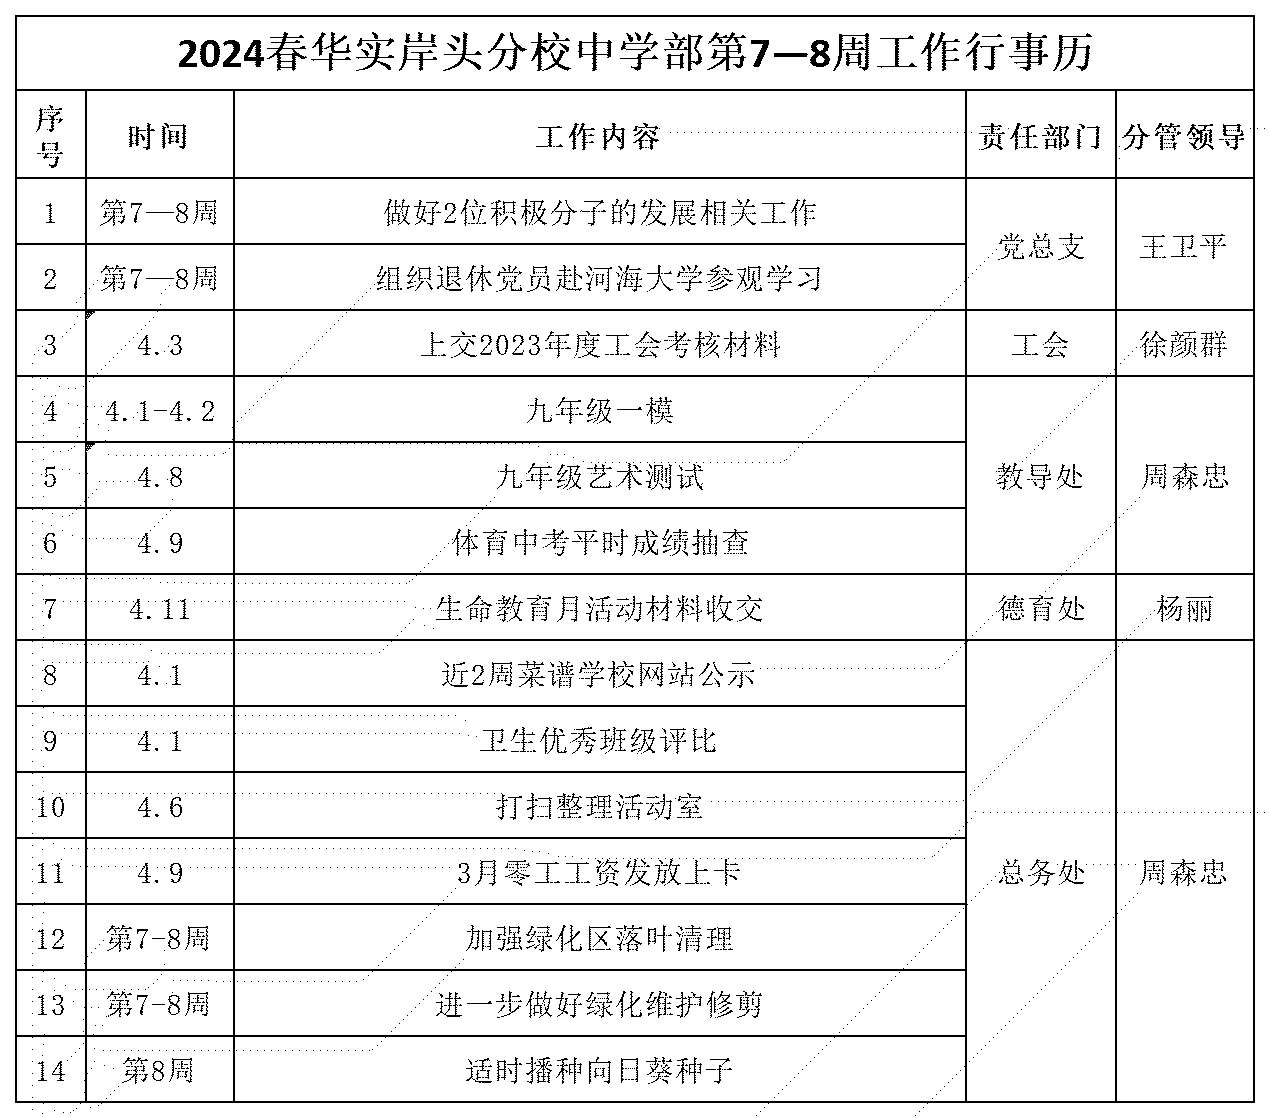 2024春华实岸头分校中学部7—8周工作行事历_Sheet1.png